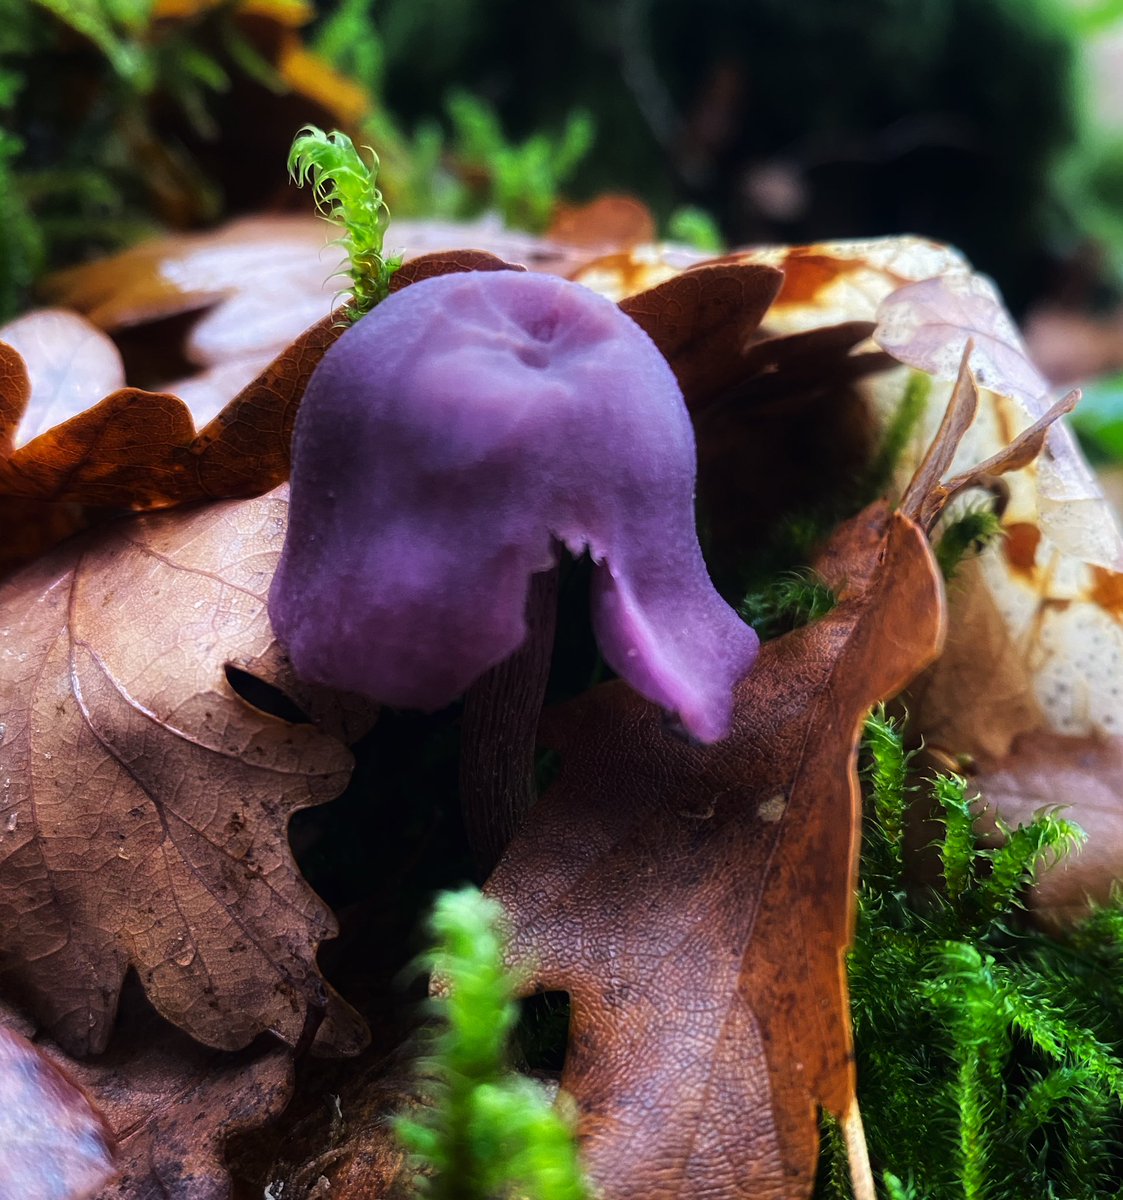 #mushrooms #mushroomphotography #AutumnPhotography #forestwalks #NaturePhotograhpy #upclose #macrophotography